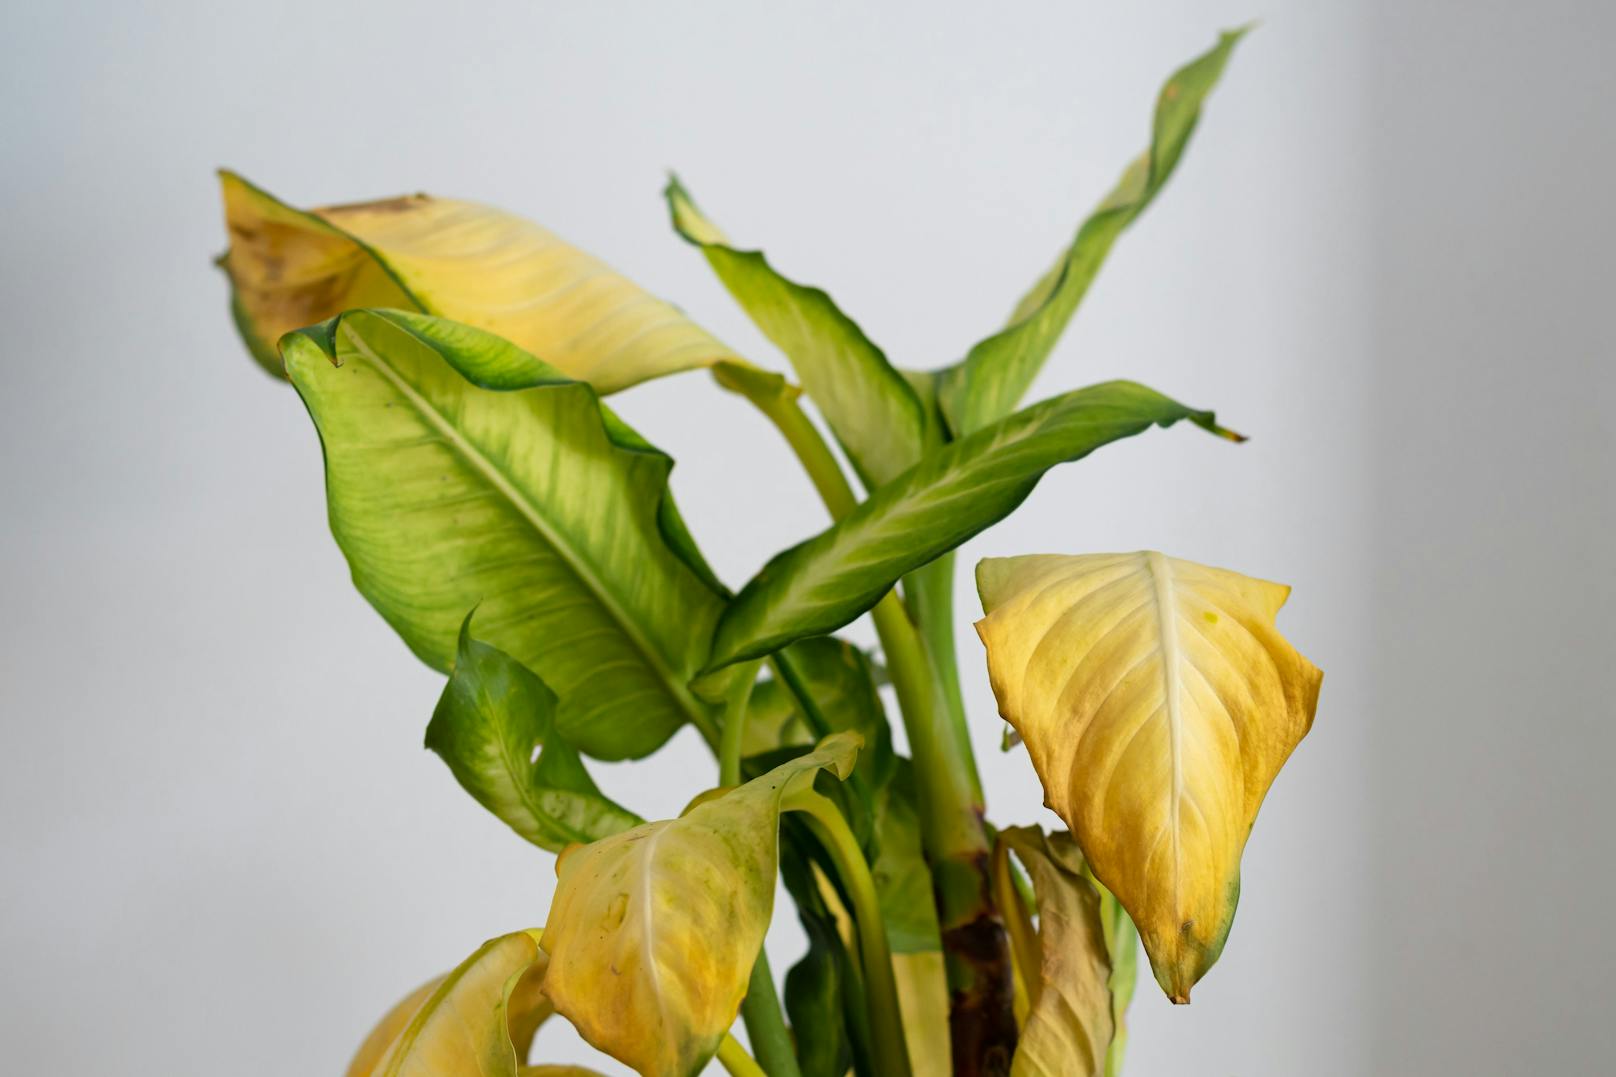 <strong>Gelbe Blätter: </strong>Ein einzelnes gelbes Blatt an einer sonst gesunden Pflanze ist eher kein Grund zur Sorge. Hat die Pflanze aber sehr viele gelbe Blätter, könnte sie eine ganze Reihe von Problemen haben: zu viel Wasser, zu wenig Wasser, Befall von Schädlingen, zu viel Dünger oder falsche Lichtverhältnisse. So oder so: Eine Pflanze mit vielen gelben Blättern solltest du besser im Laden lassen.